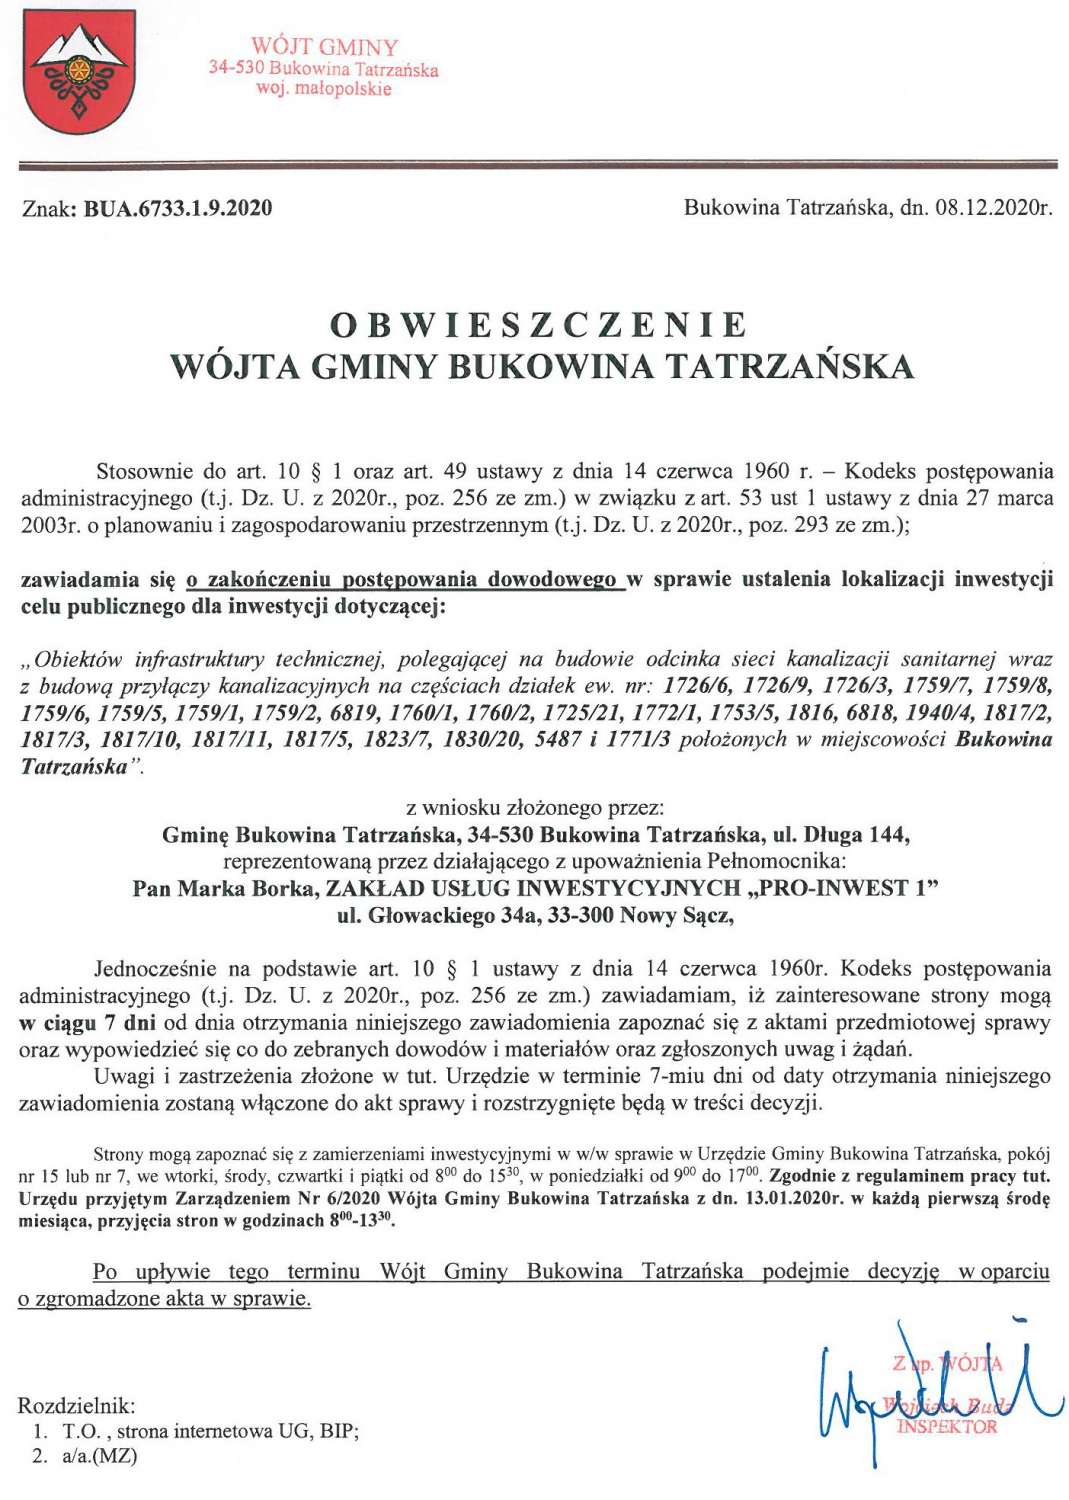 Obwieszczenie Wójta Gminy Bukowina Tatrzańska BUA 6733.1.9.2020